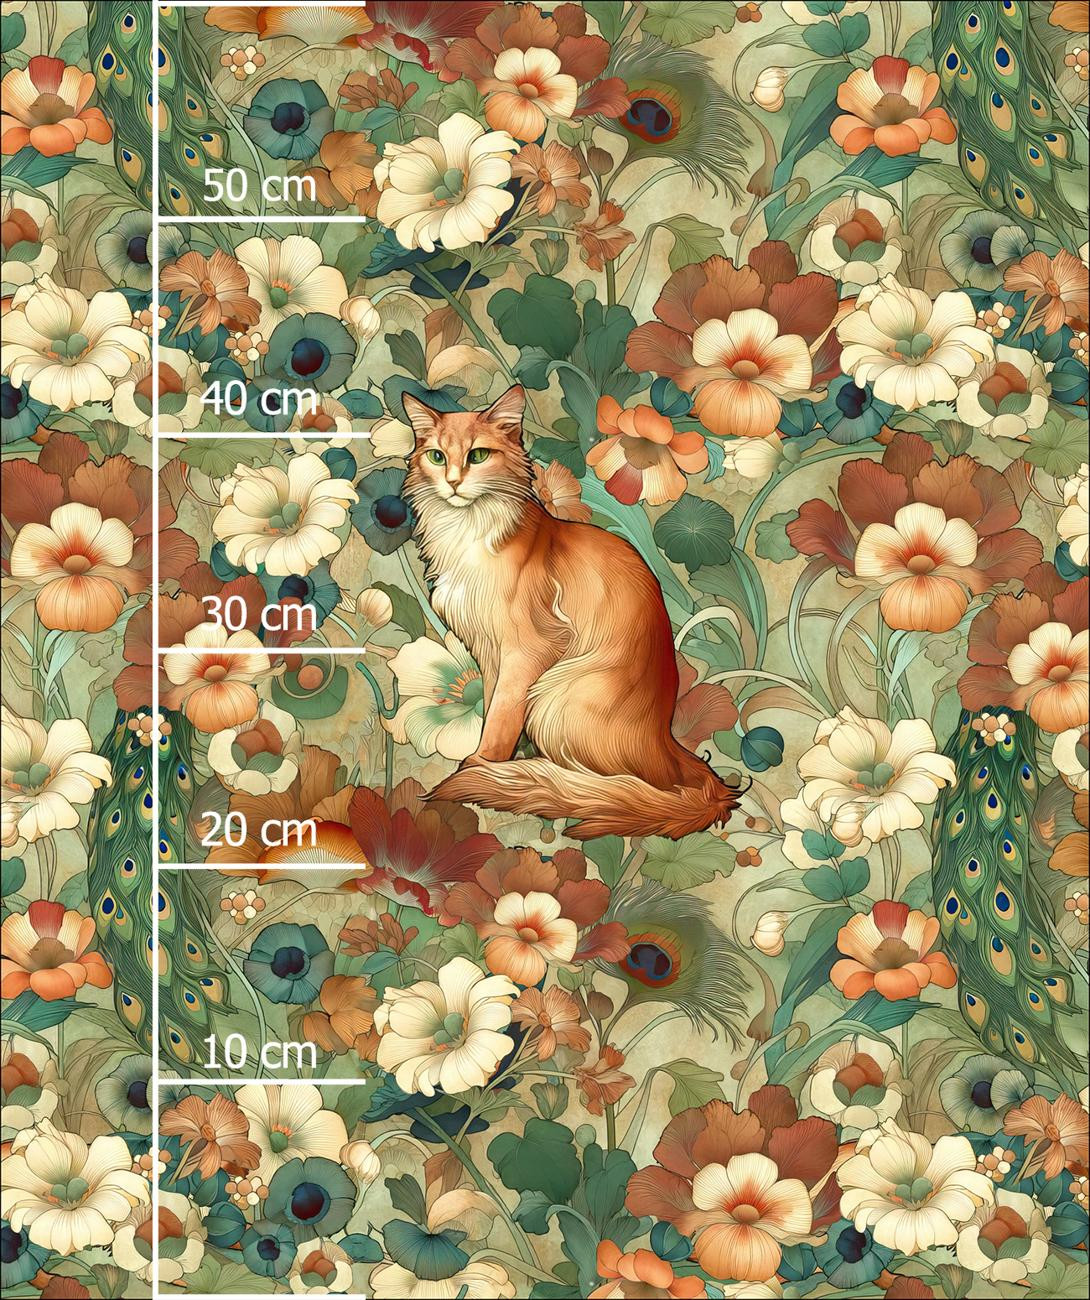 ART NOUVEAU CATS & FLOWERS WZ. 2 - panel (60cm x 50cm)